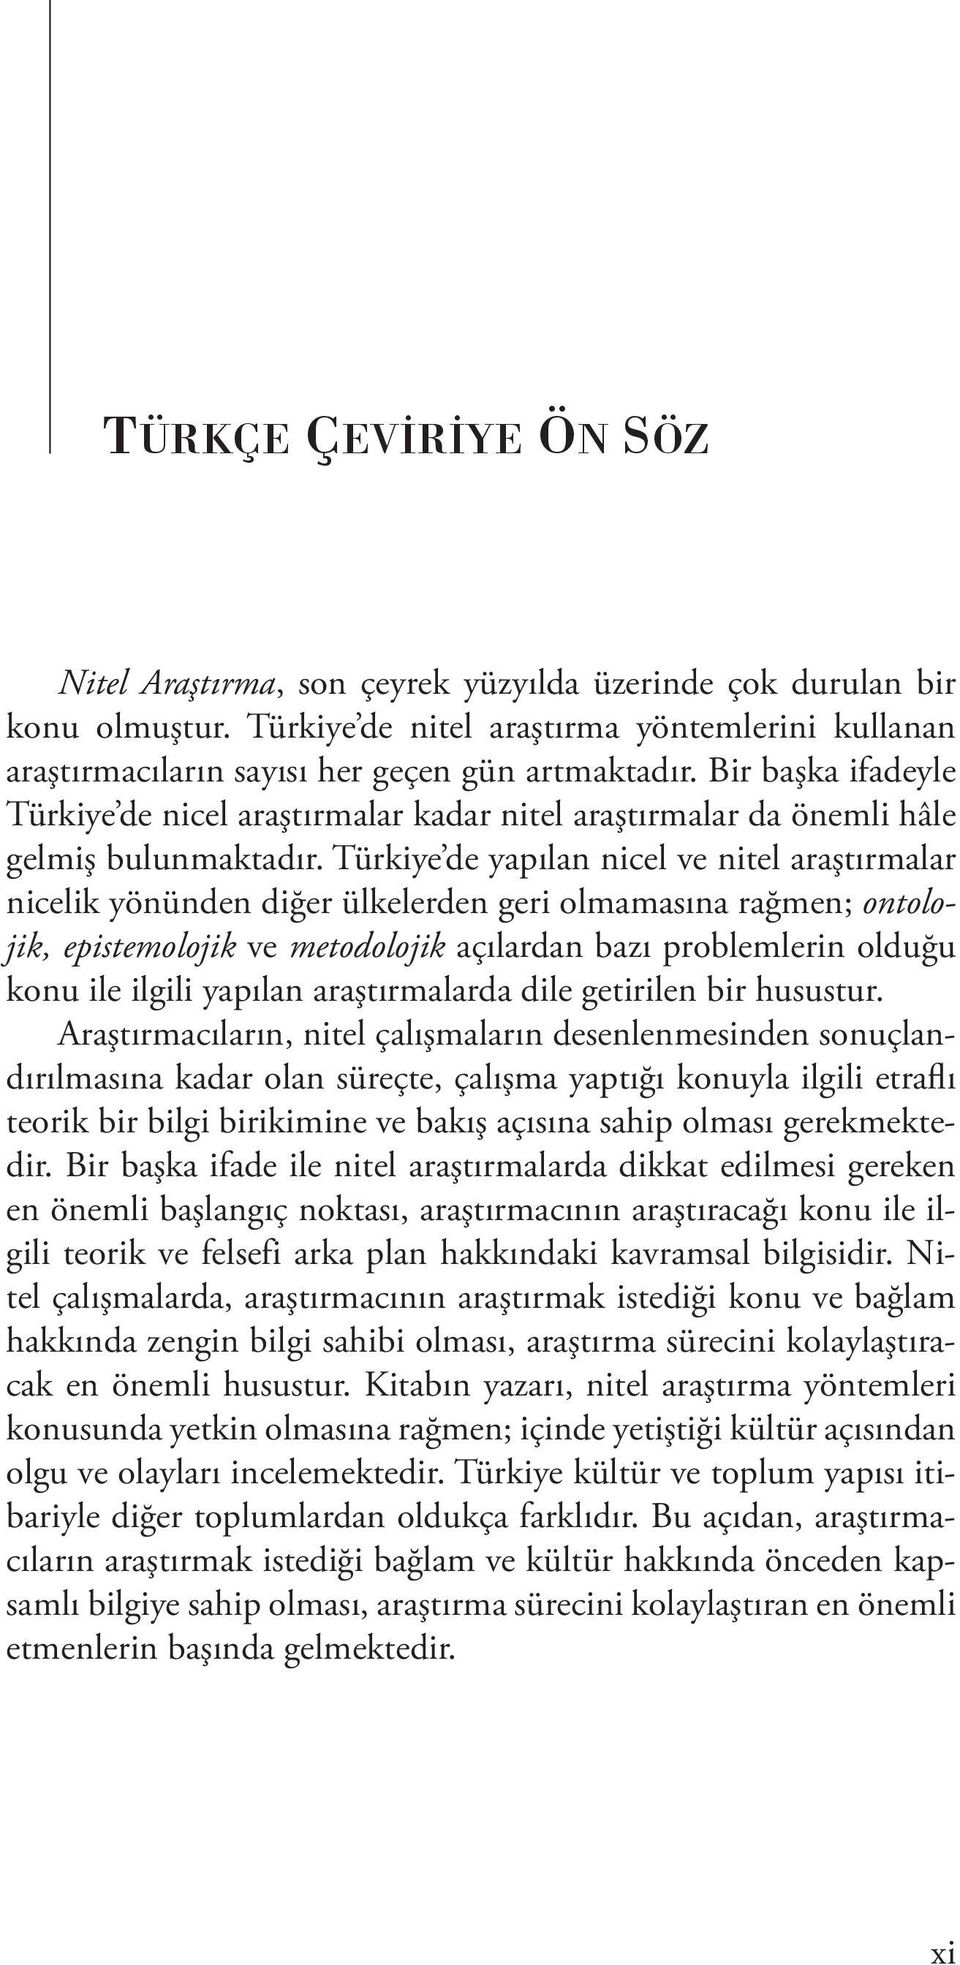 Türkiye de yapılan nicel ve nitel araştırmalar nicelik yönünden diğer ülkelerden geri olmamasına rağmen; ontolojik, epistemolojik ve metodolojik açılardan bazı problemlerin olduğu konu ile ilgili